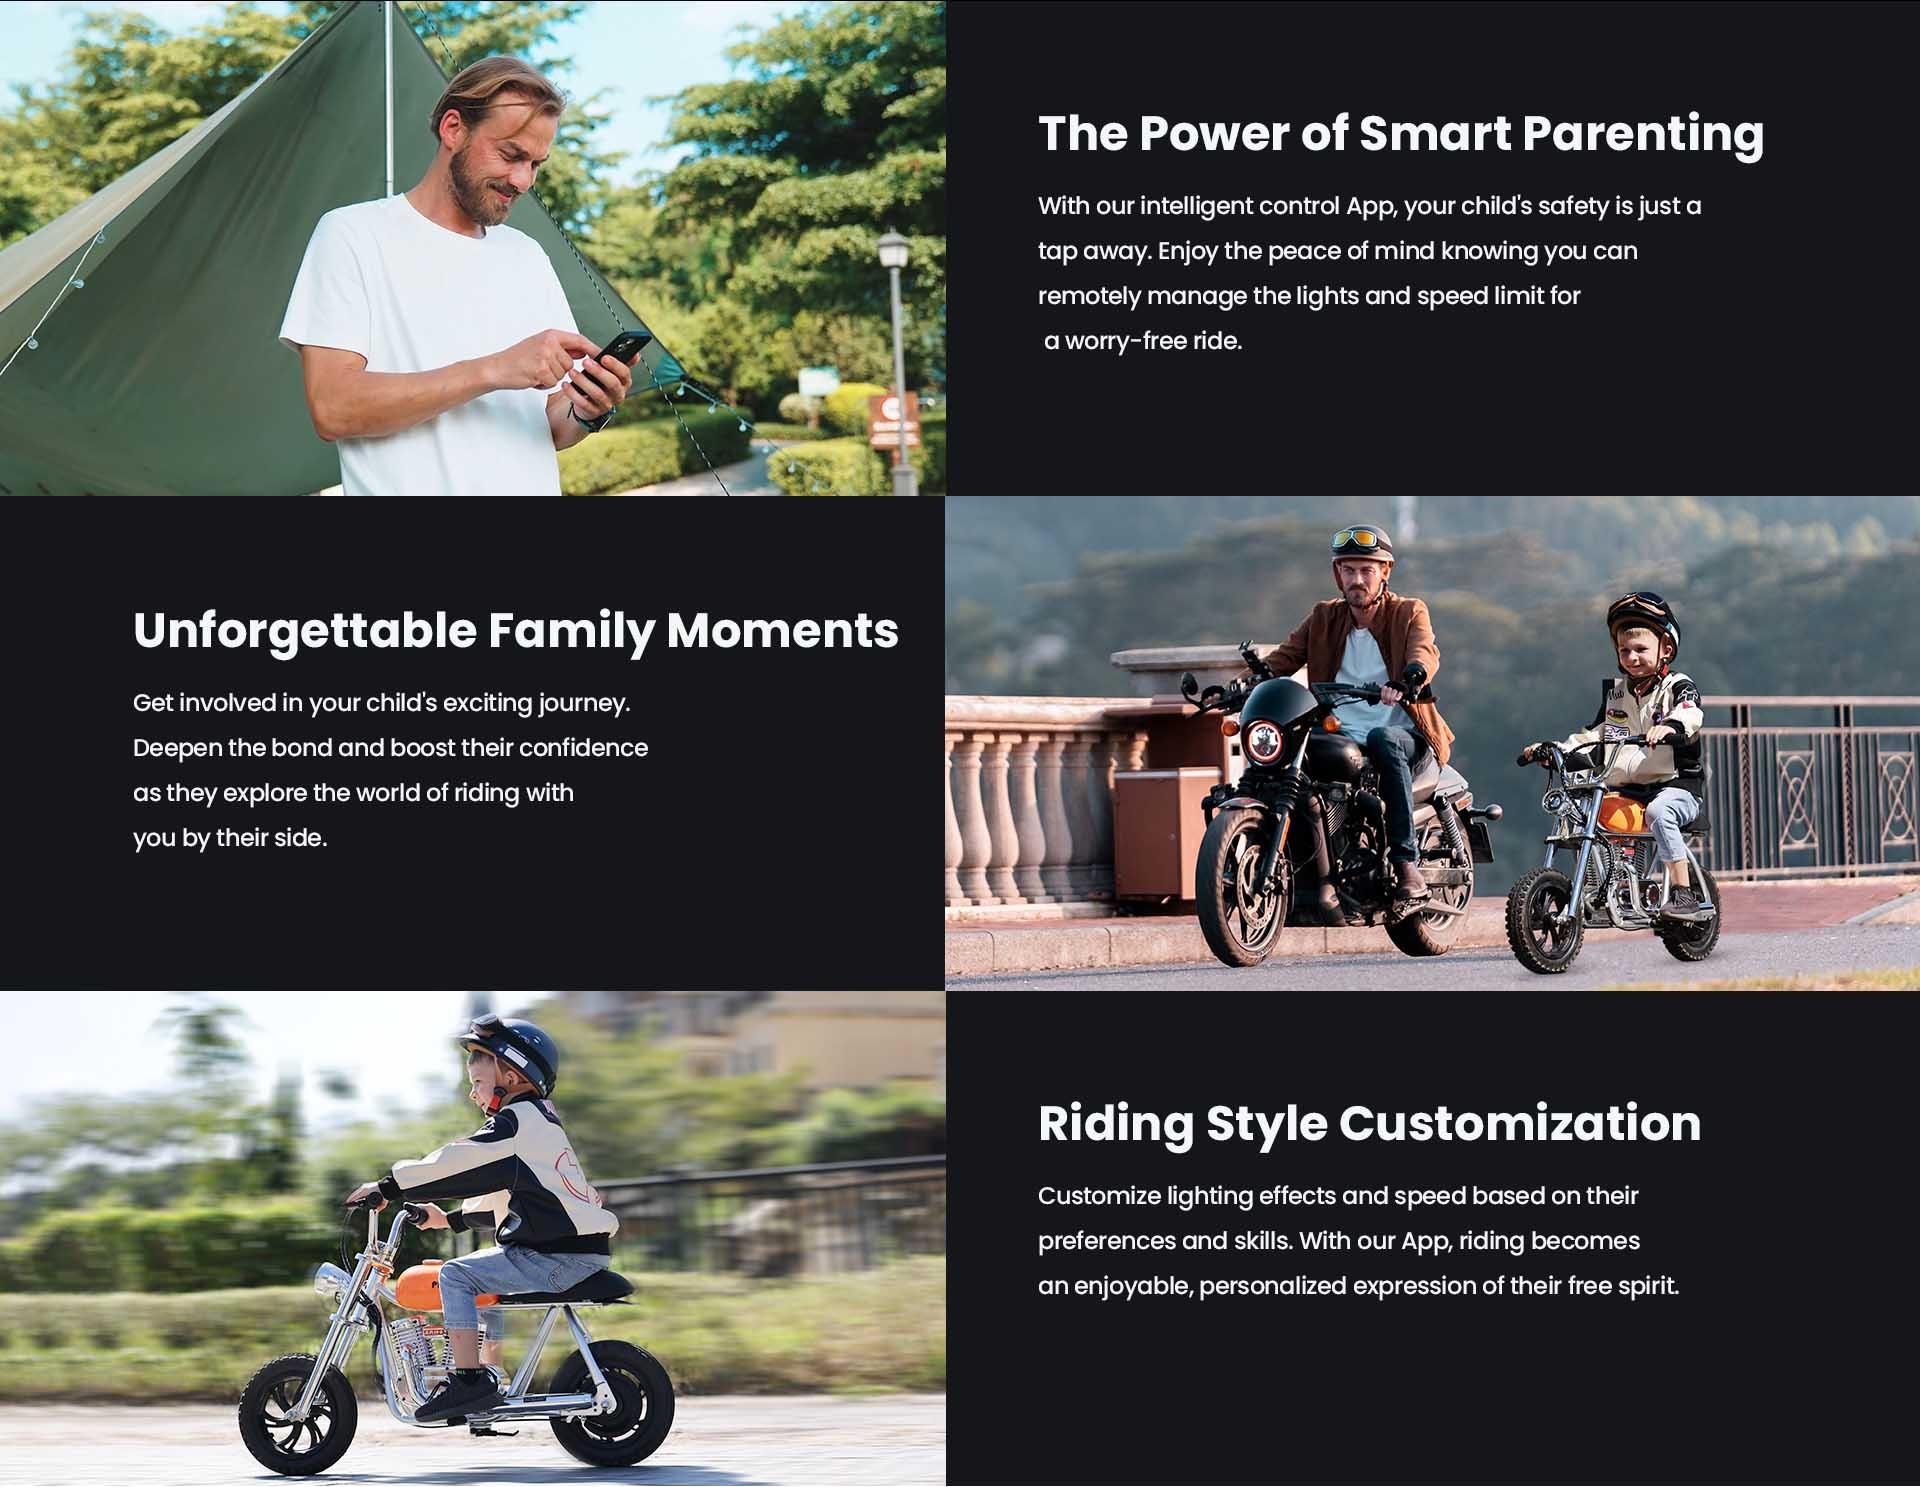 HYPER GOGO Pioneer 12 Plus met App Elektrische Motorfiets voor Kinderen, 5.2Ah 160W met 12x3 Banden, 12KM Topbereik - Blauw